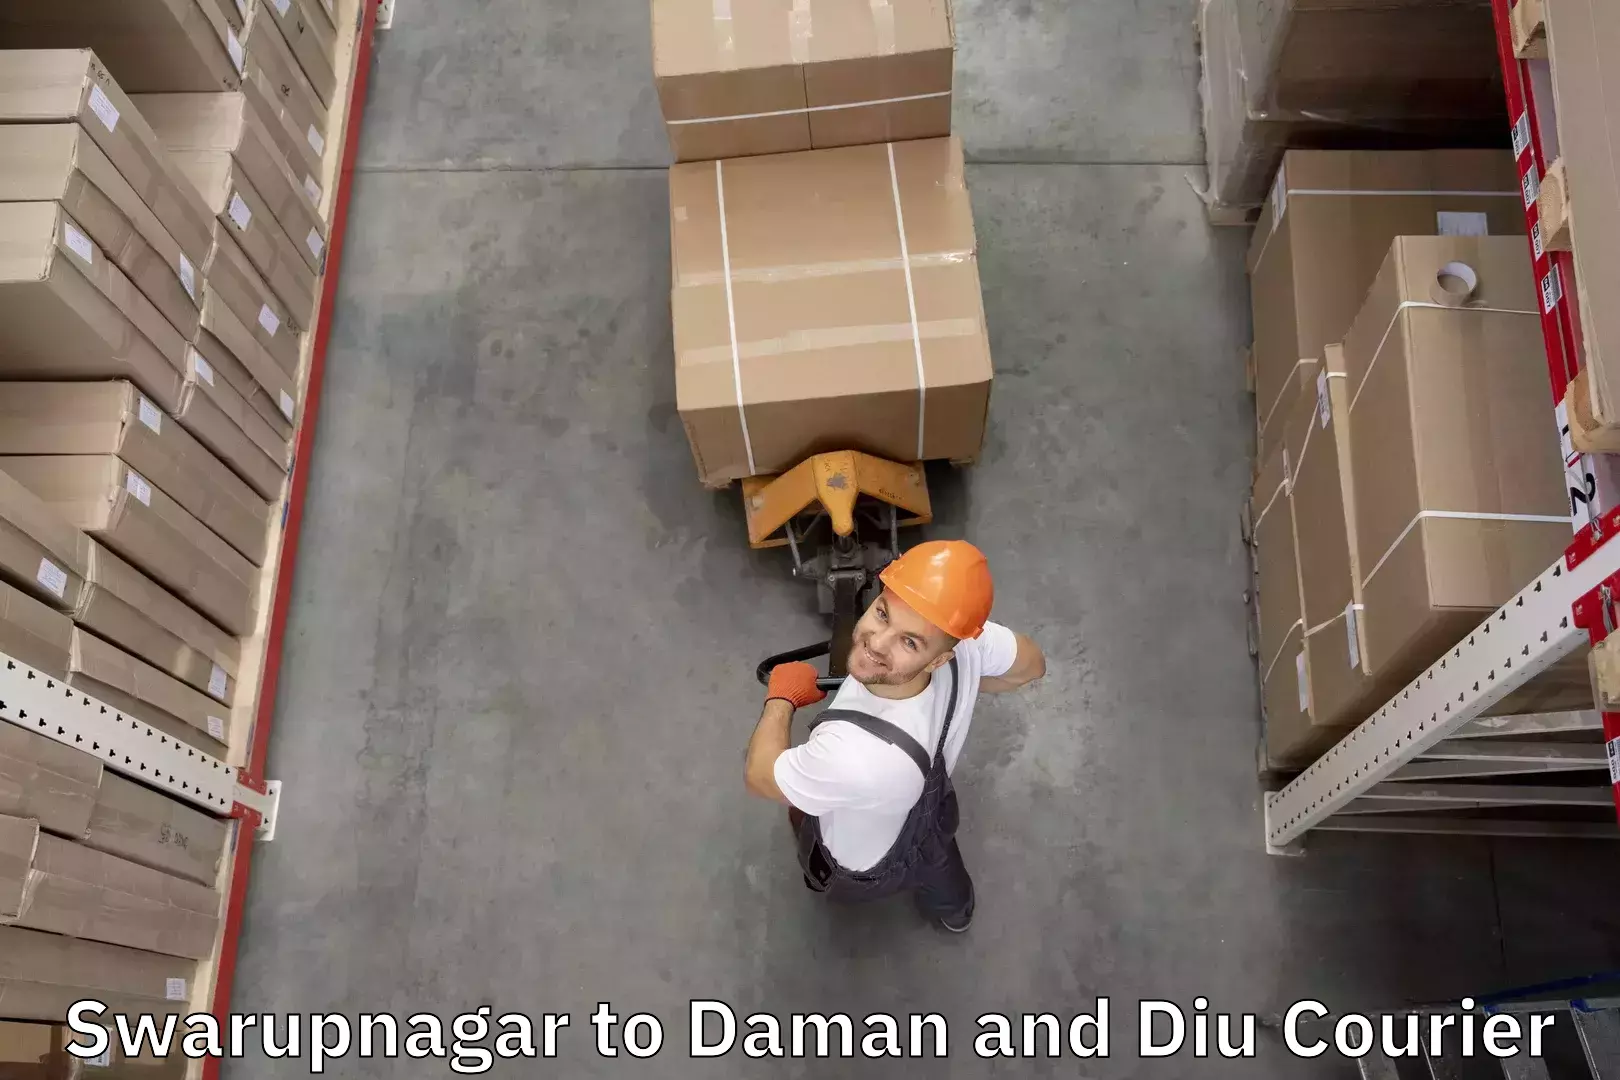 Baggage shipping service Swarupnagar to Daman